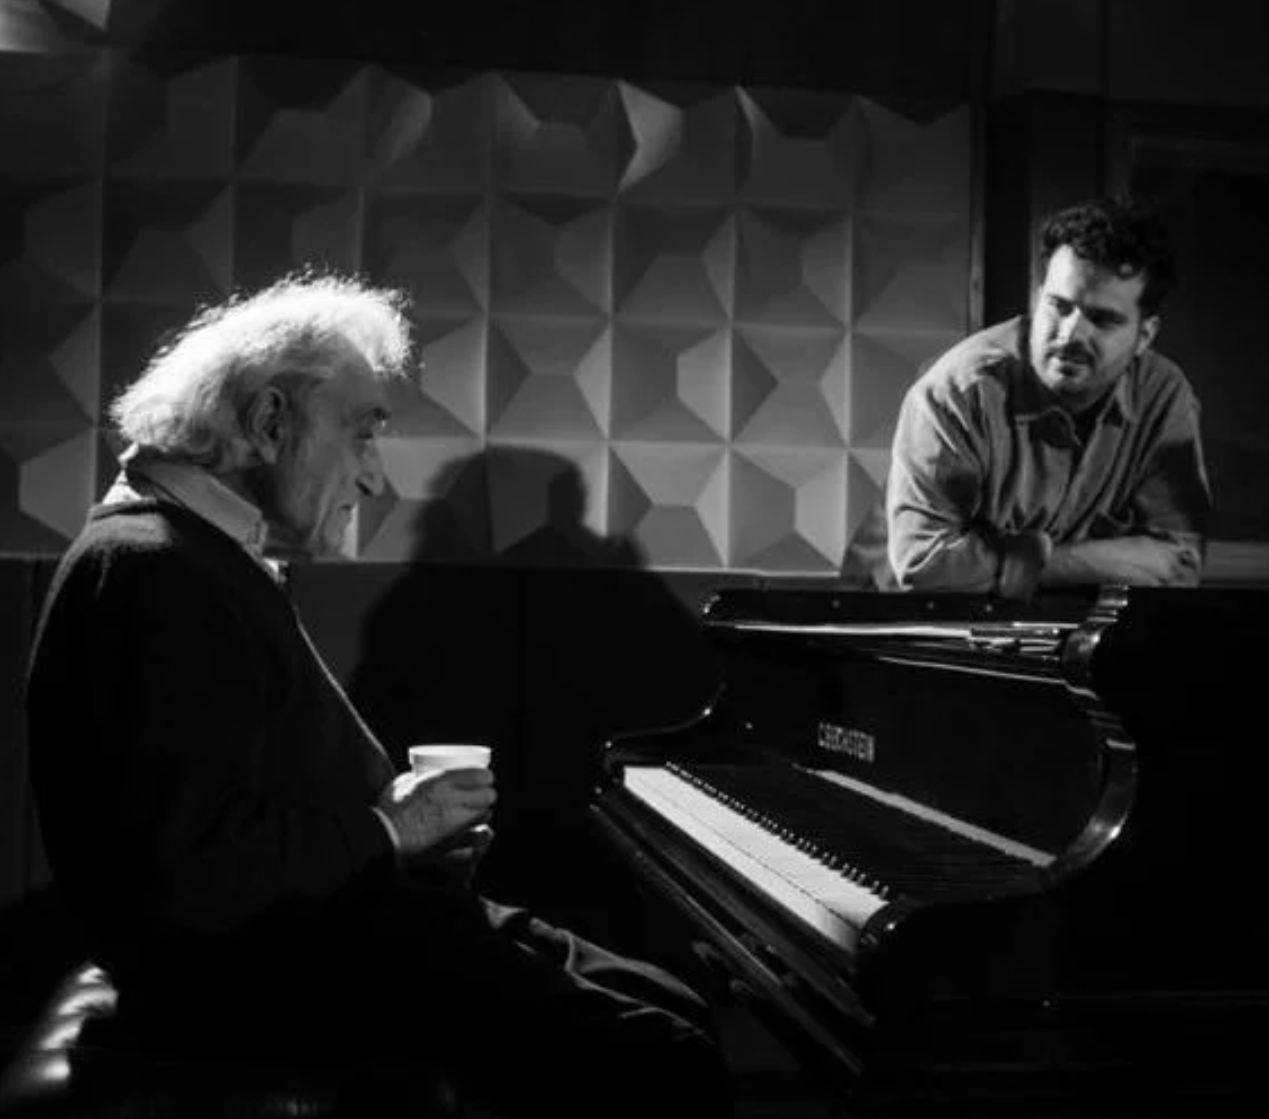 Disco “DUAL” dirigido por Camilo Aliaga reúne adestacados pianistas nacionales y debuta en el FestivalTeatro a Mil junto al maestro Valentín Trujillo